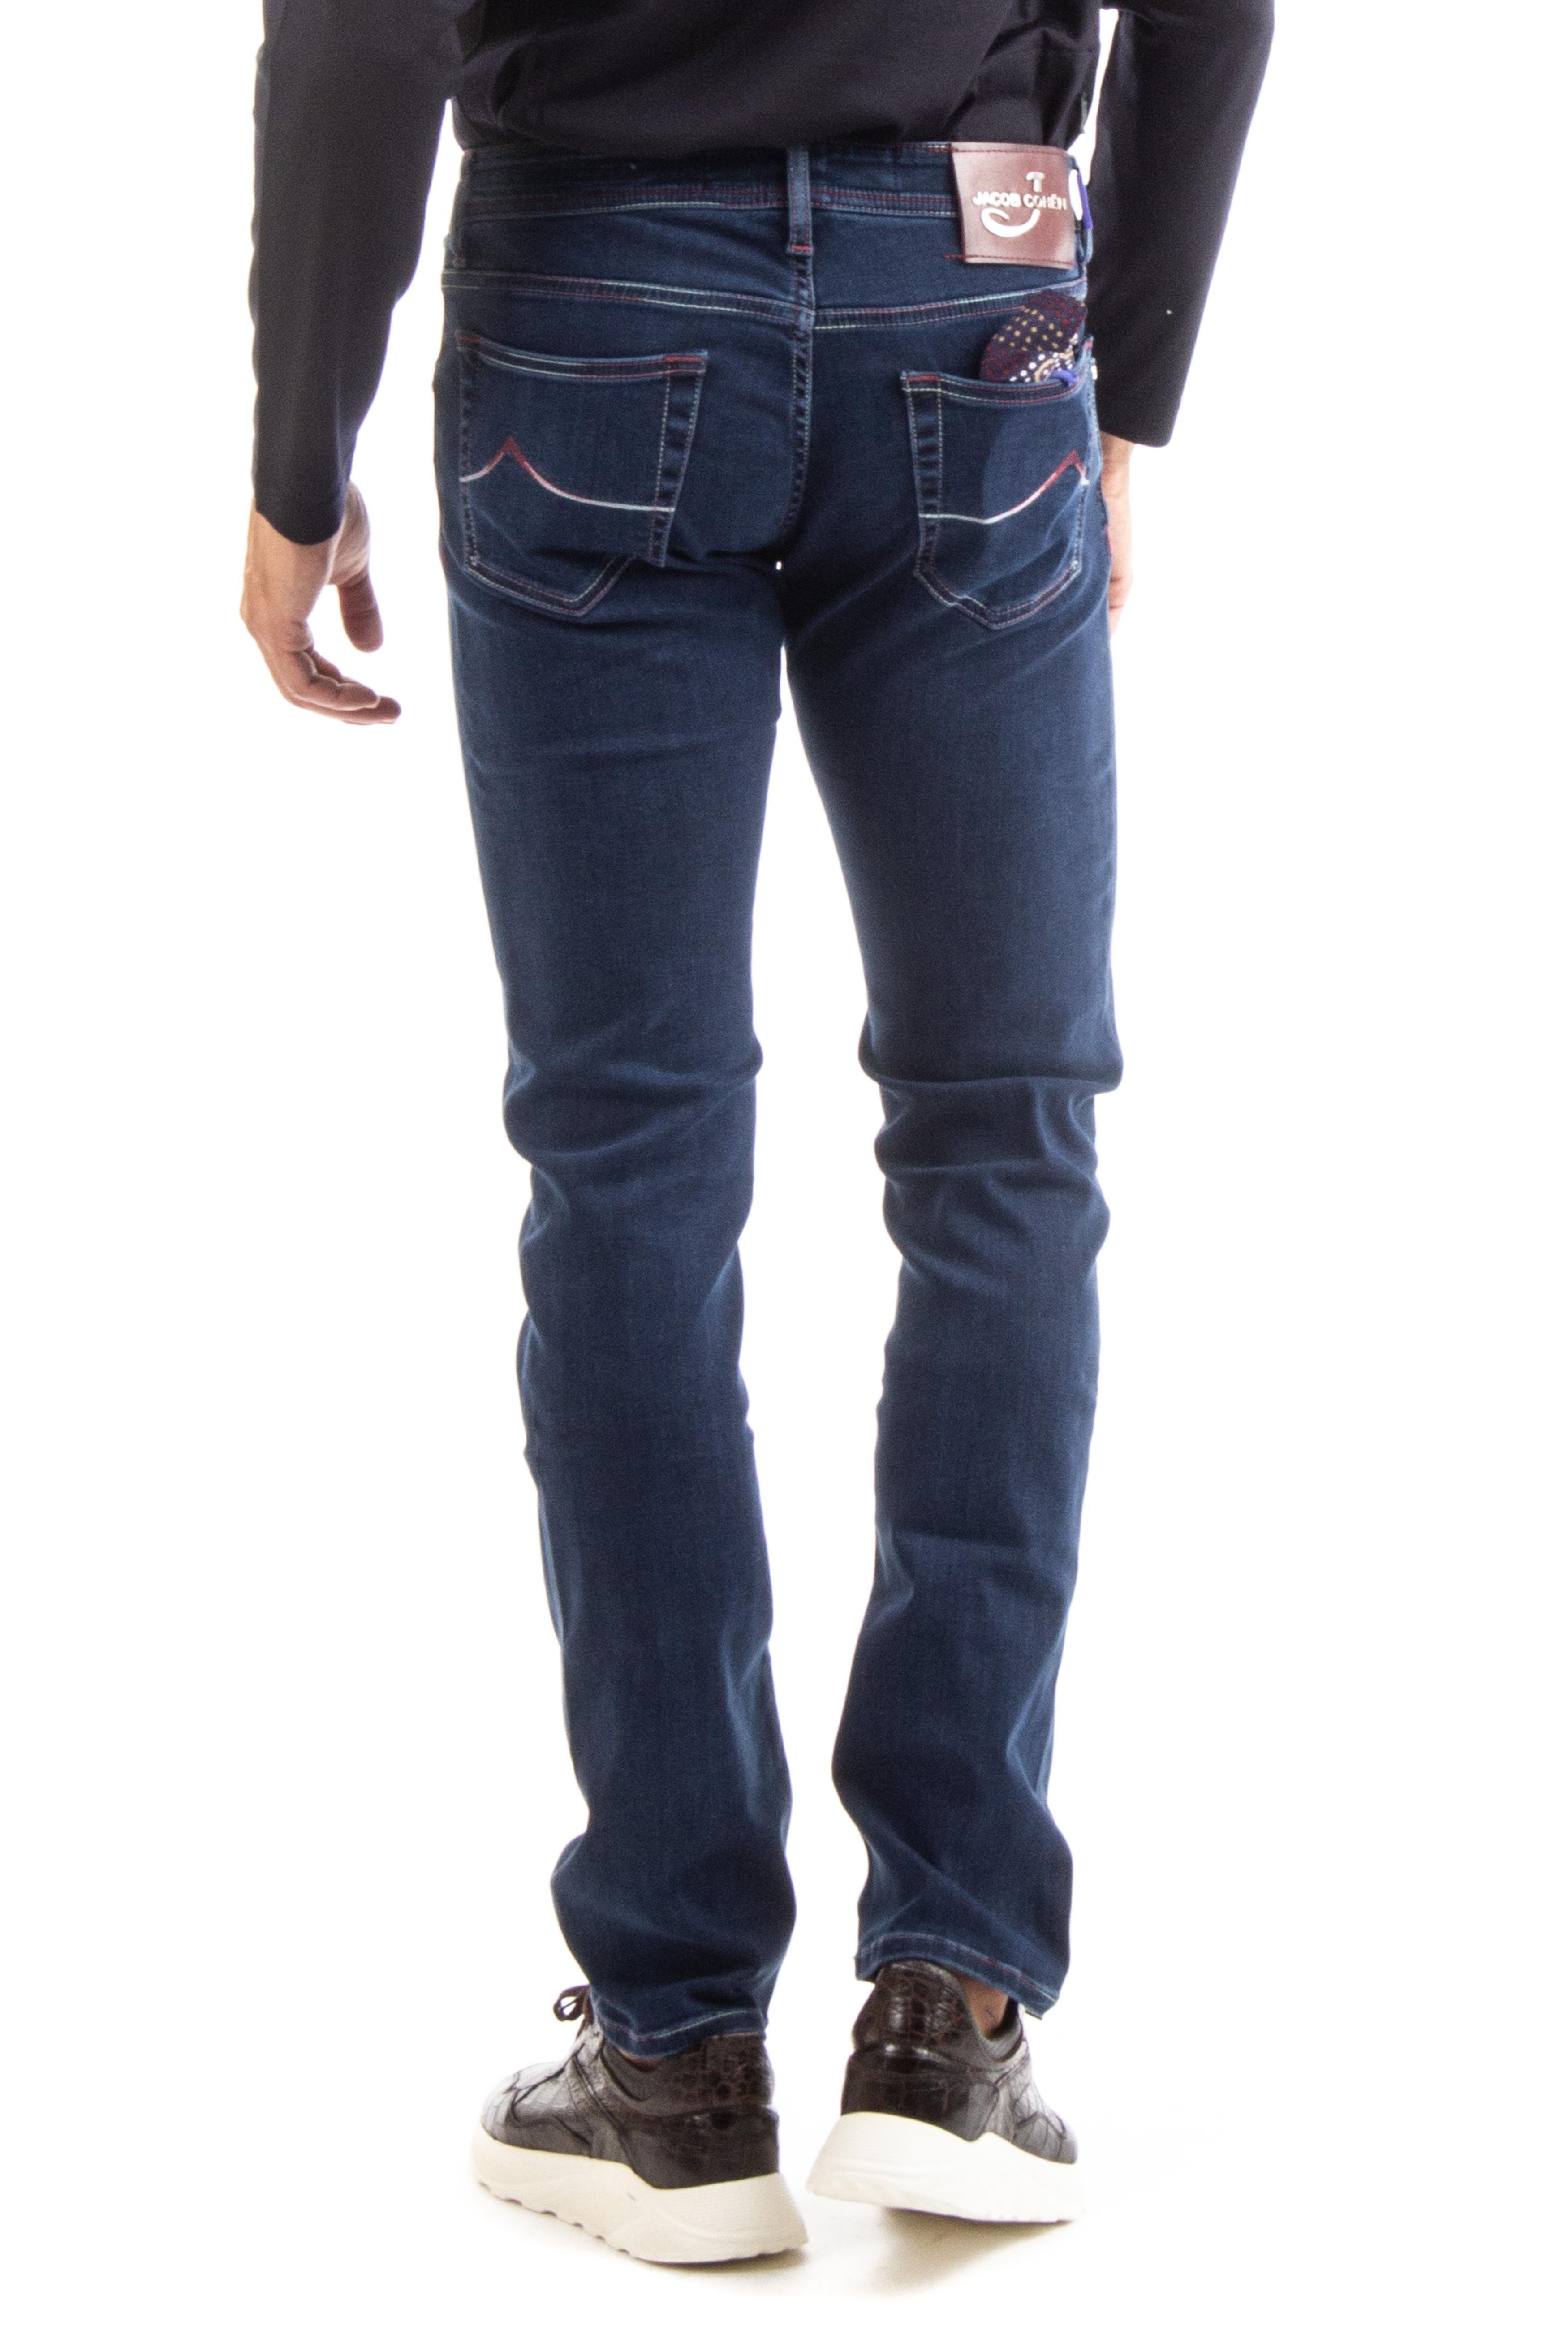 jacob cohen j622 jeans